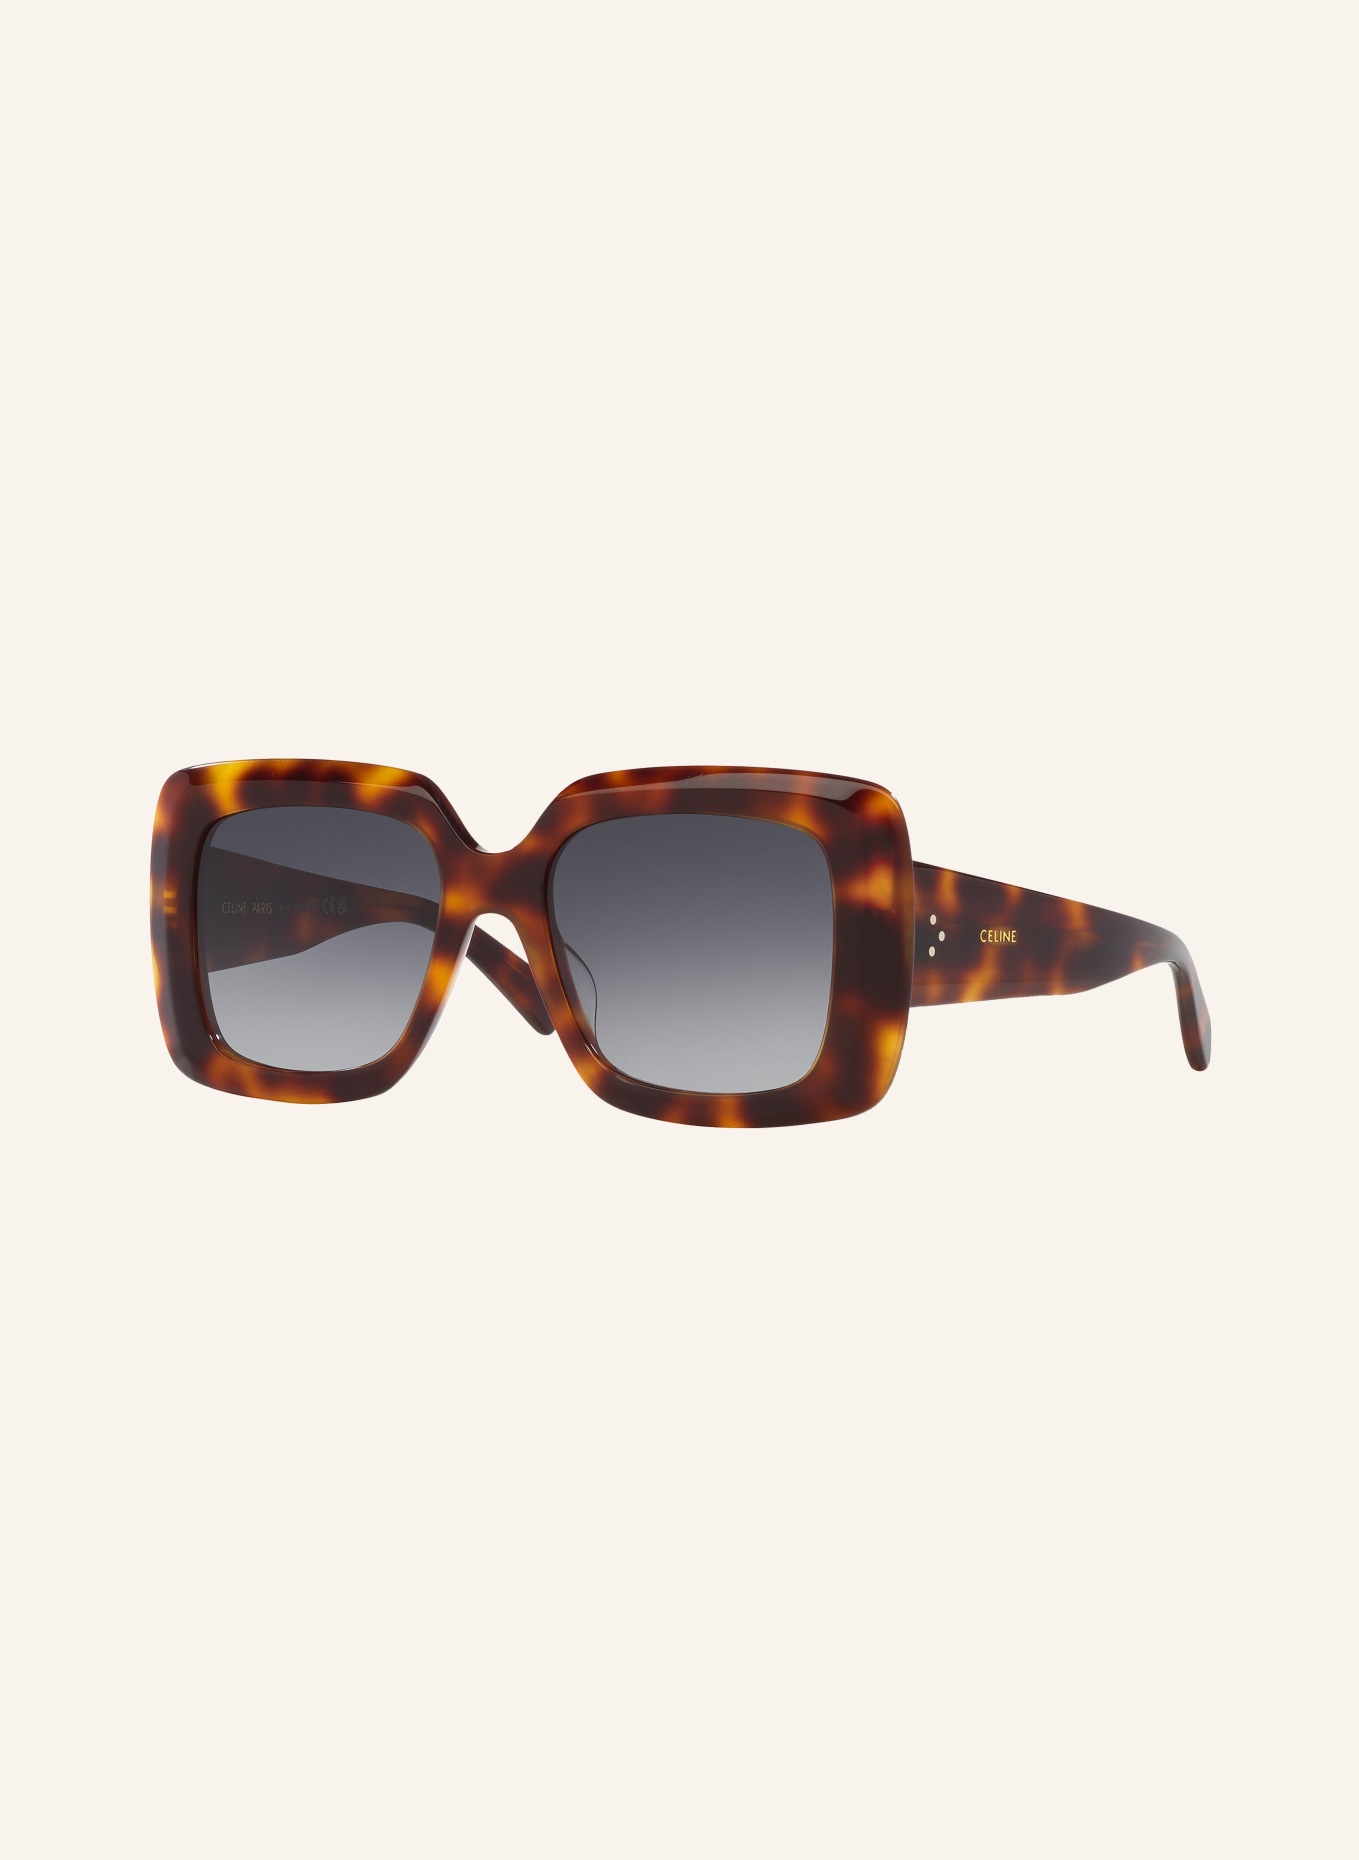 CELINE Sunglasses CL000423 BOLD 3 DOTS, Color: 4410L1 - HAVANA/GRAY GRADIENT (Image 1)